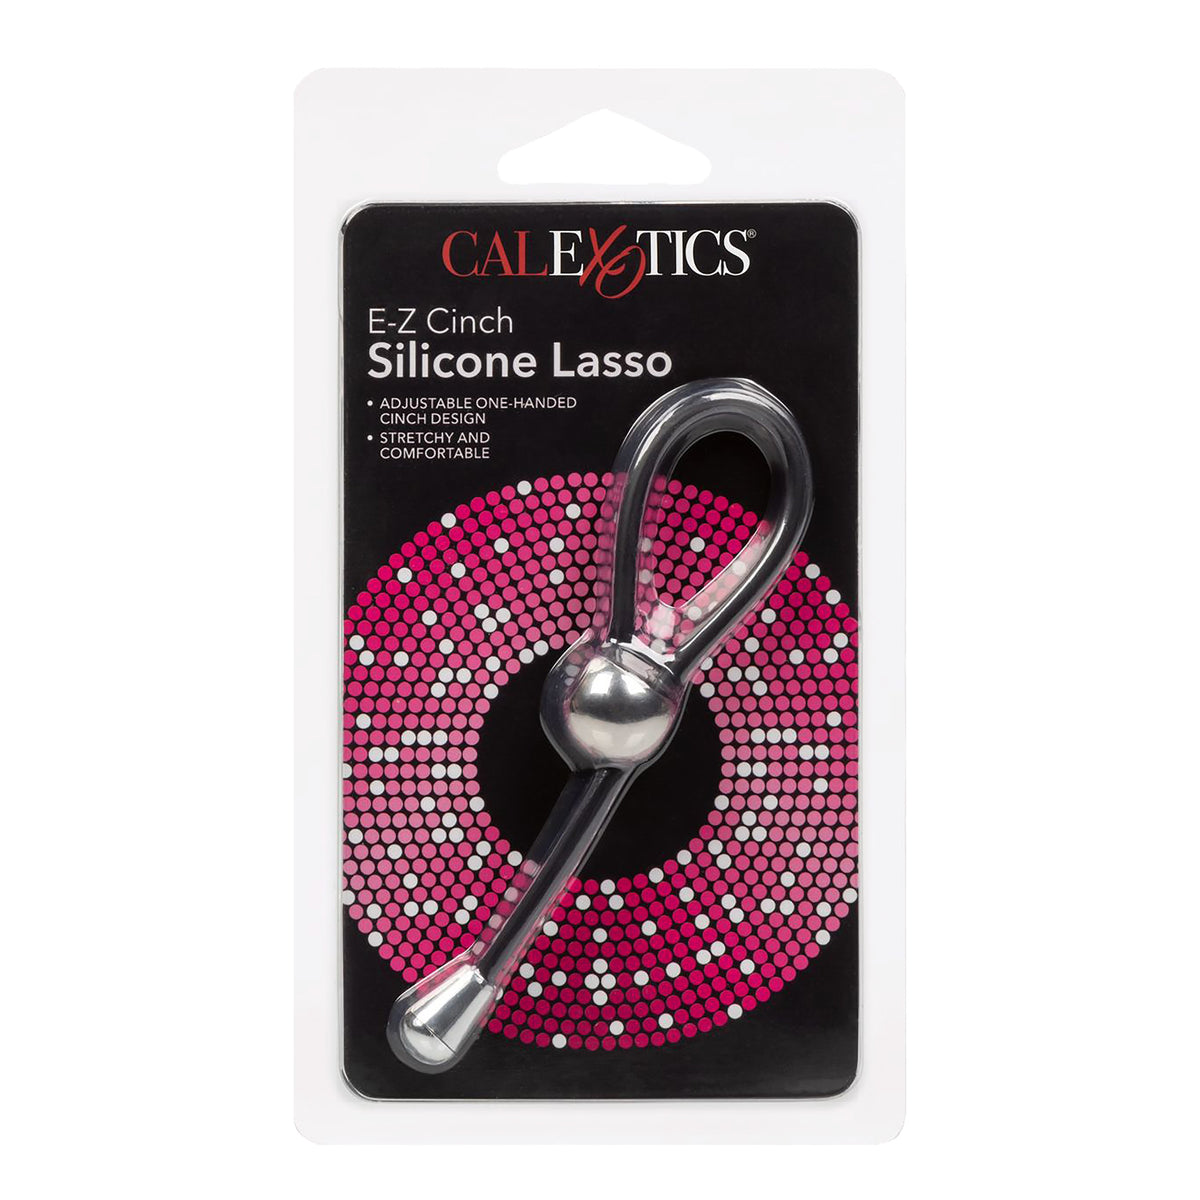 CalExotics E-Z Cinch Silicone Lasso - Black